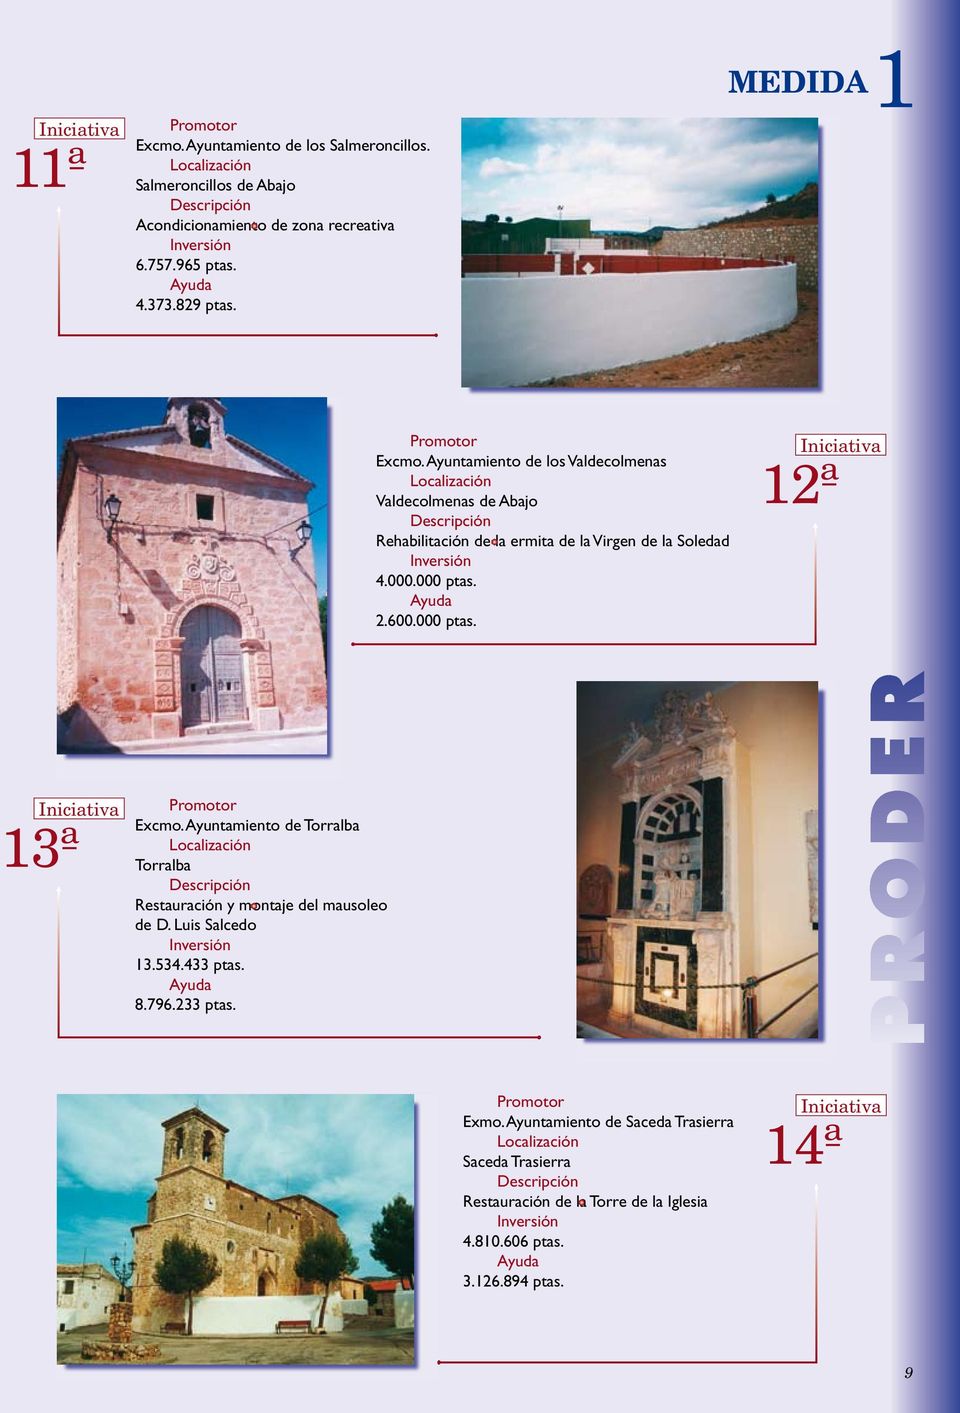 000 ptas. 2.600.000 ptas. 12ª 13ª Excmo. Ayuntamiento de Torralba Torralba Restauración y montaje del mausoleo de D. Luis Salcedo 13.534.